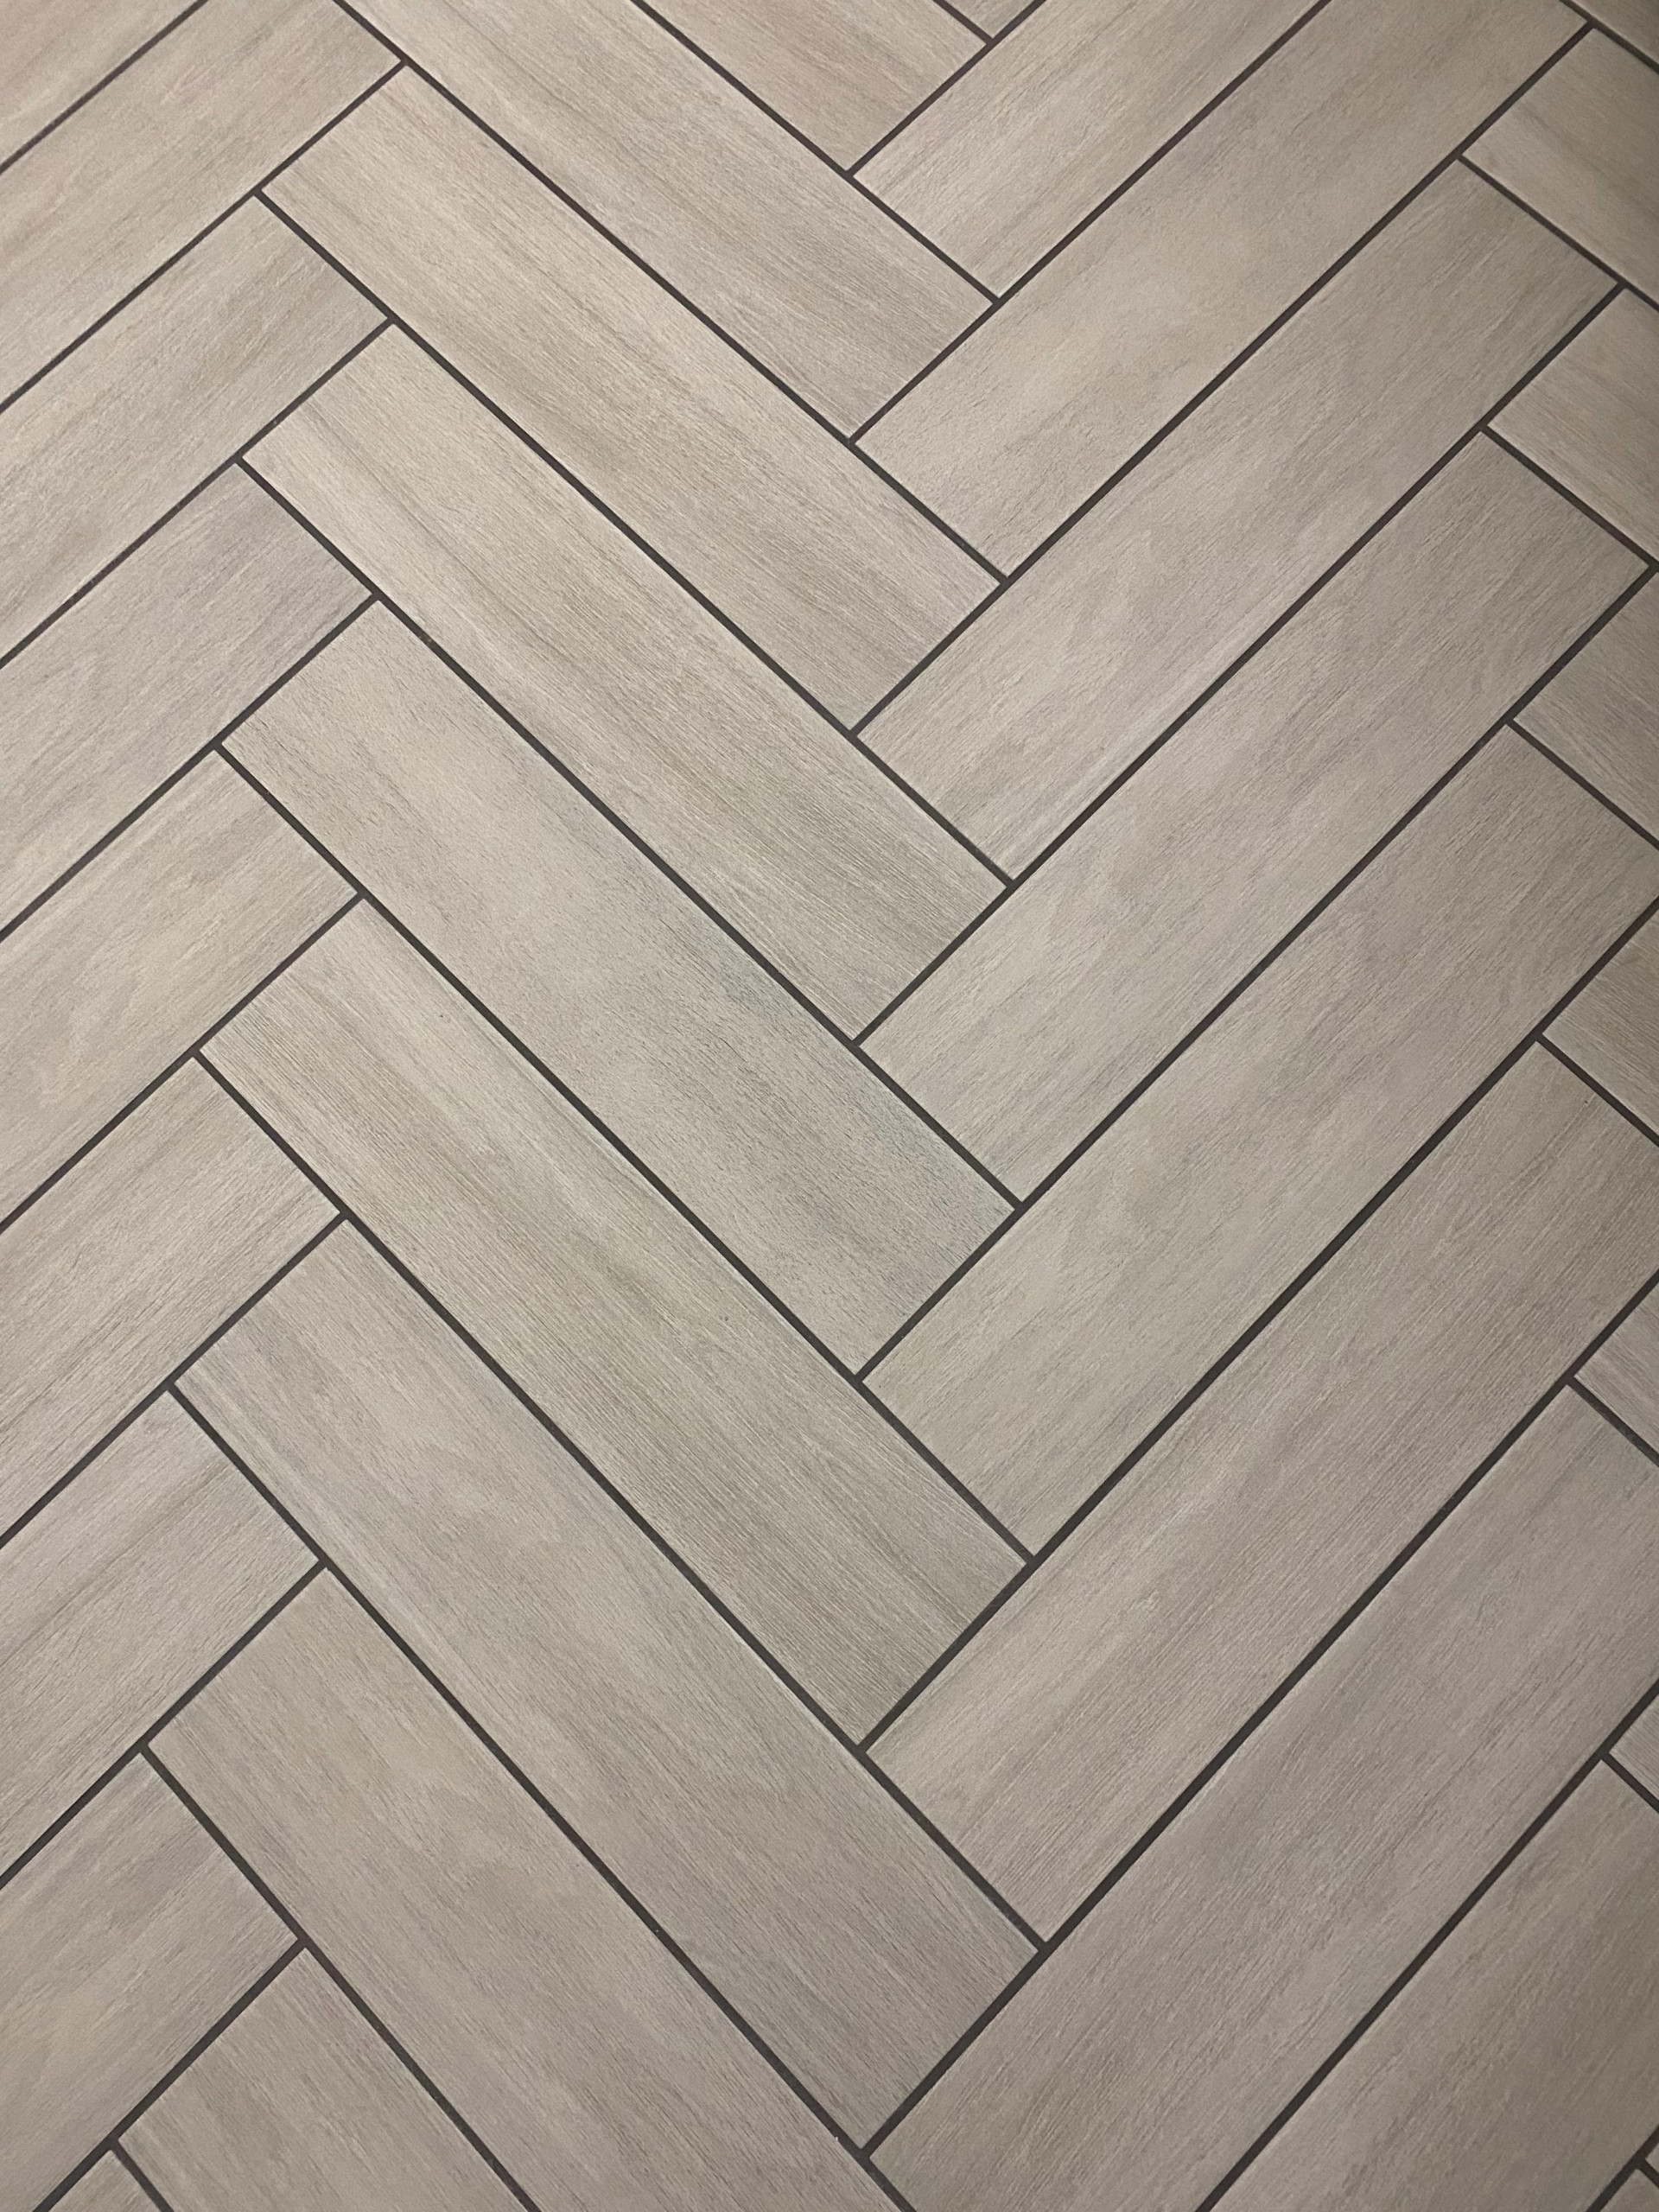 Custom tile floor